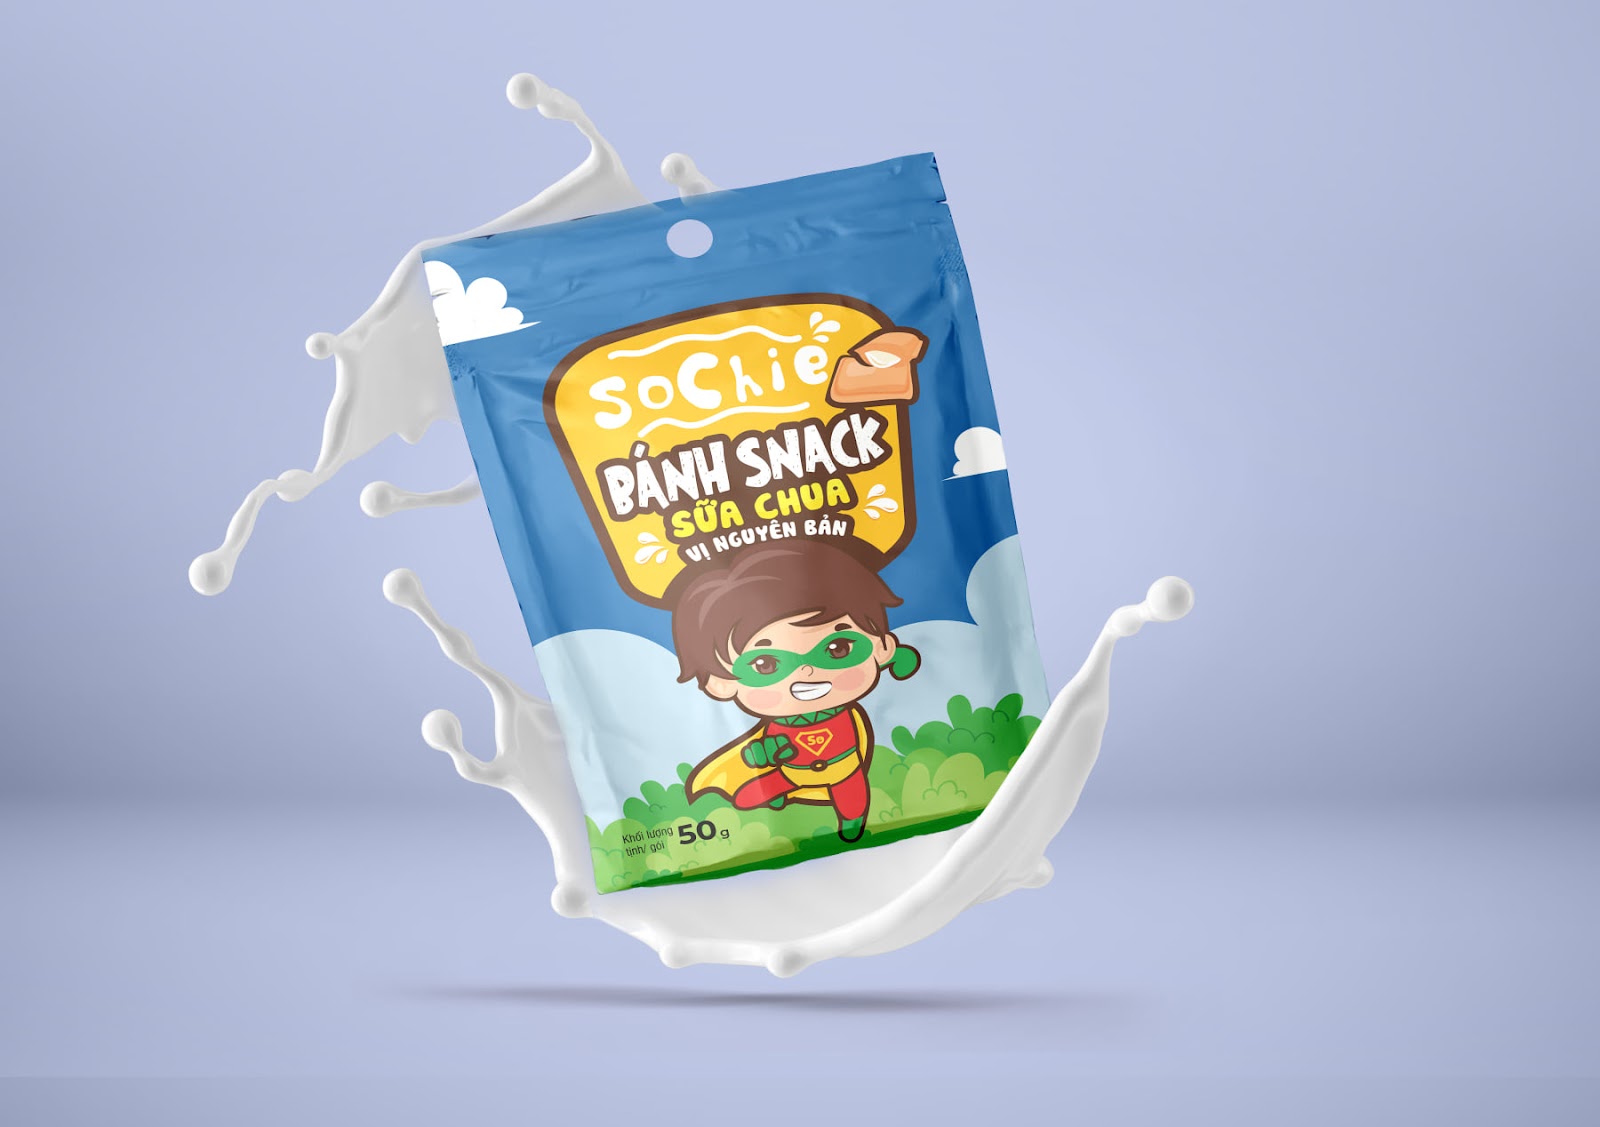 Mẫu thiết kế logo chibi cute Sochie Bánh snack sữa chua vị nguyên bản